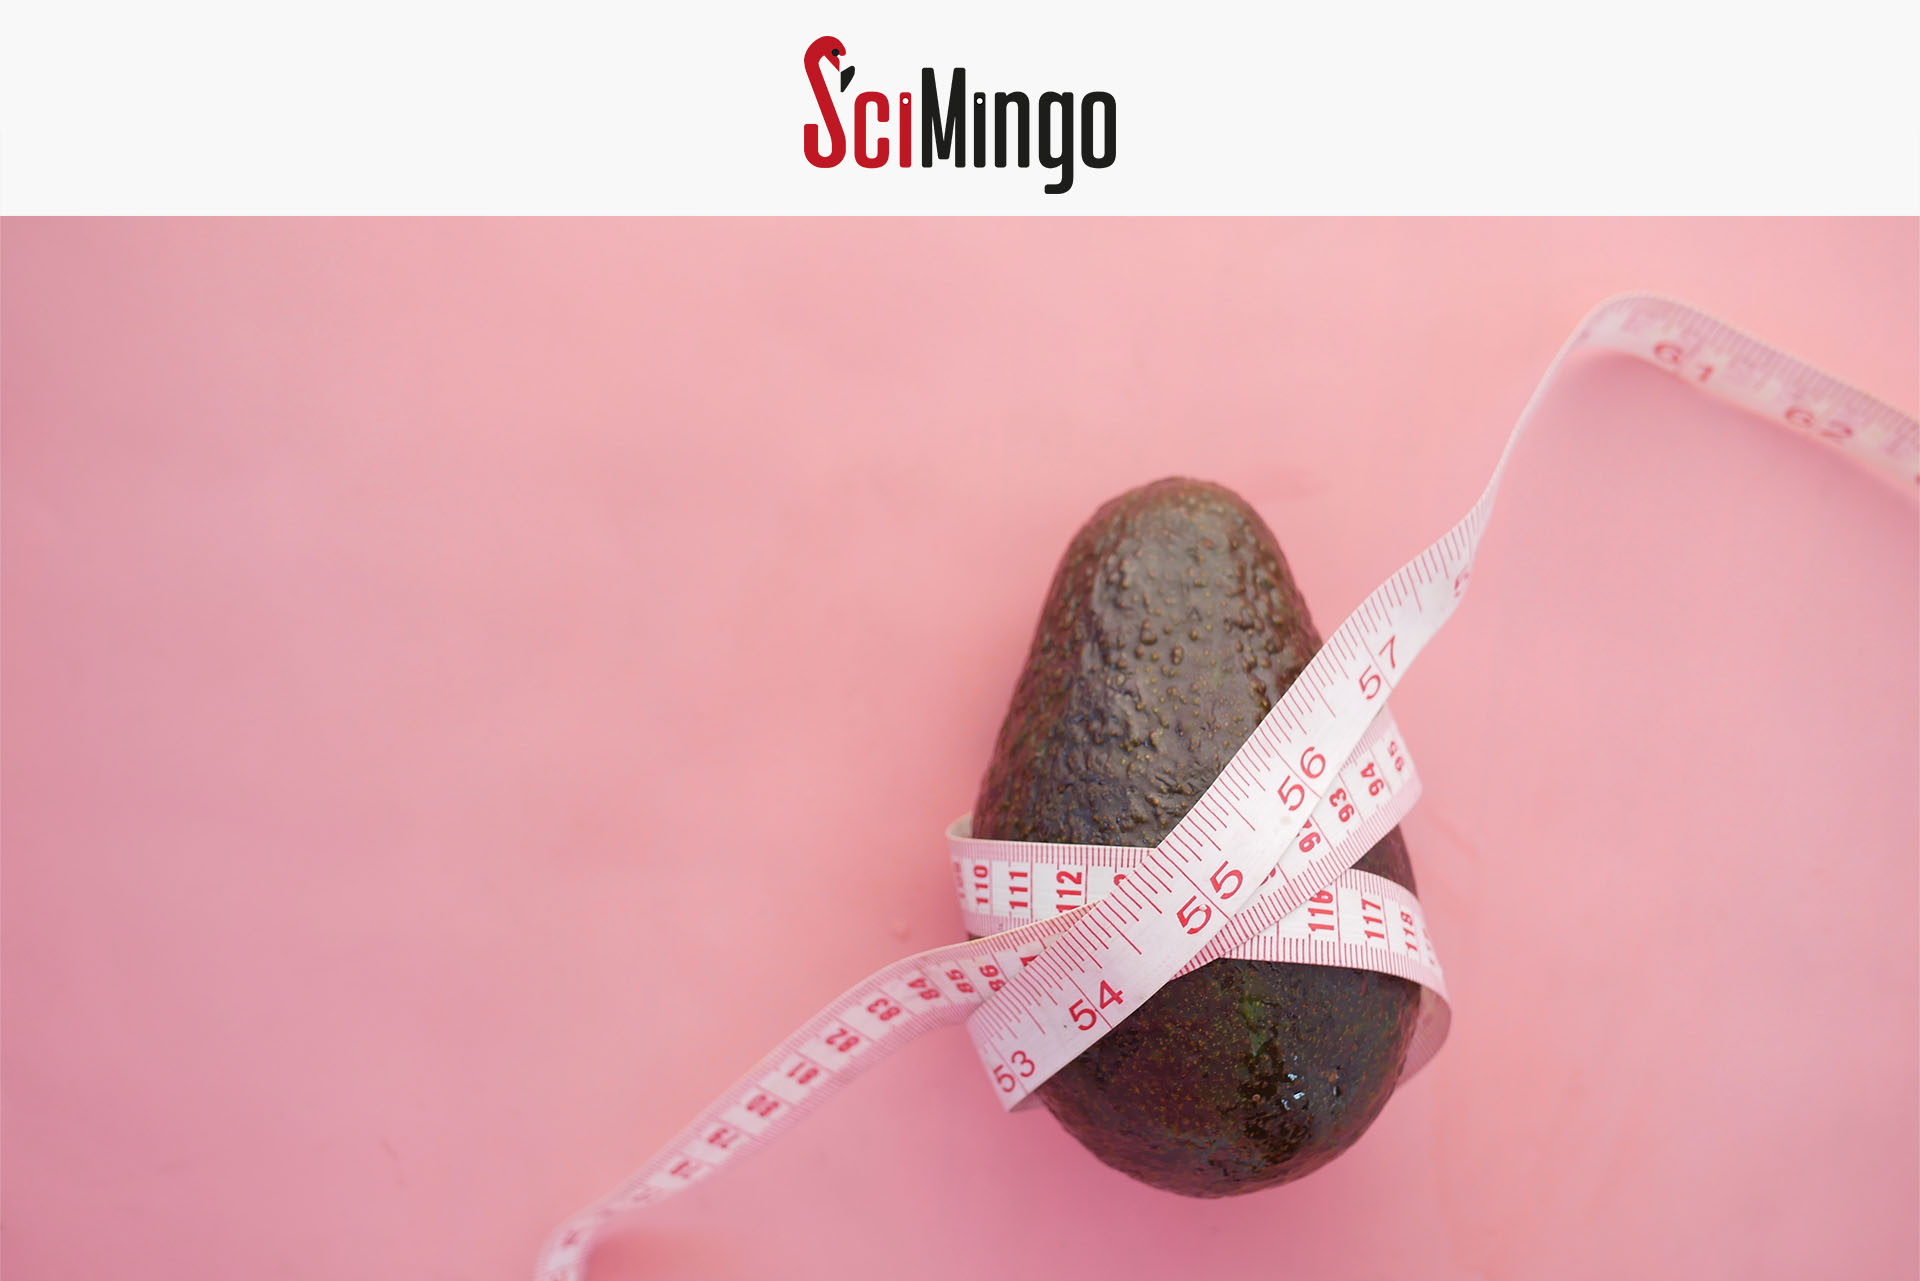 SciMingo logo and avocado with a measuring tape